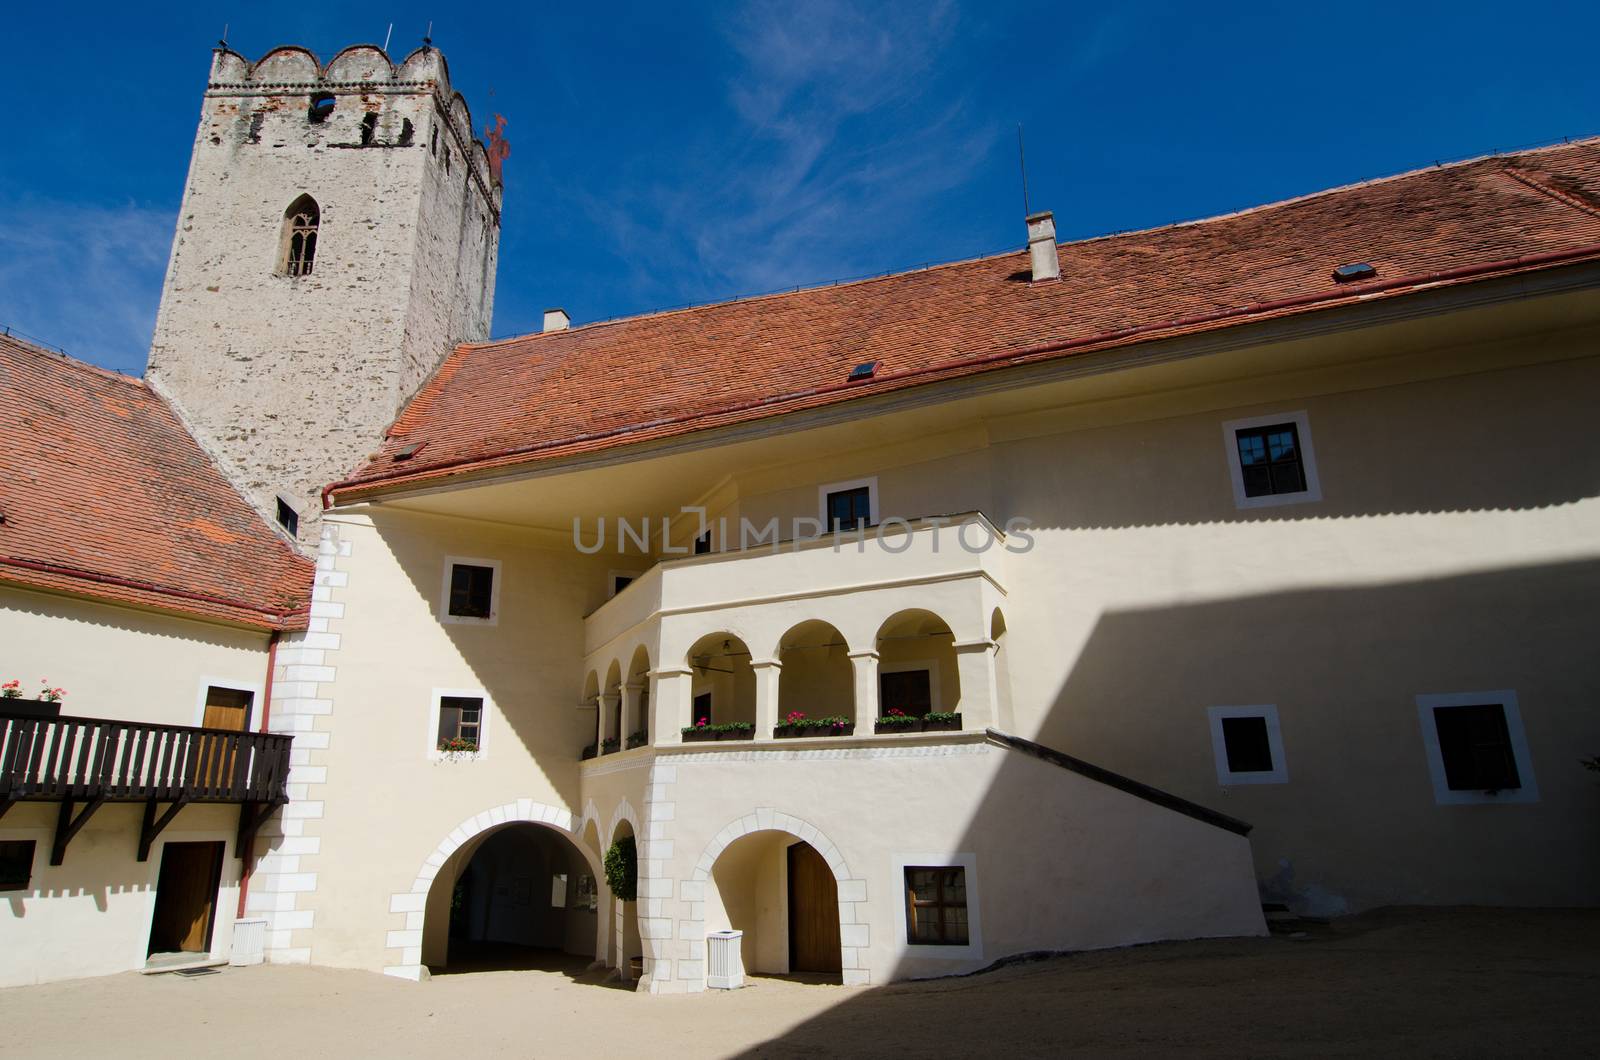 Vranov nad Dyji castle, Czech republic by sarkao